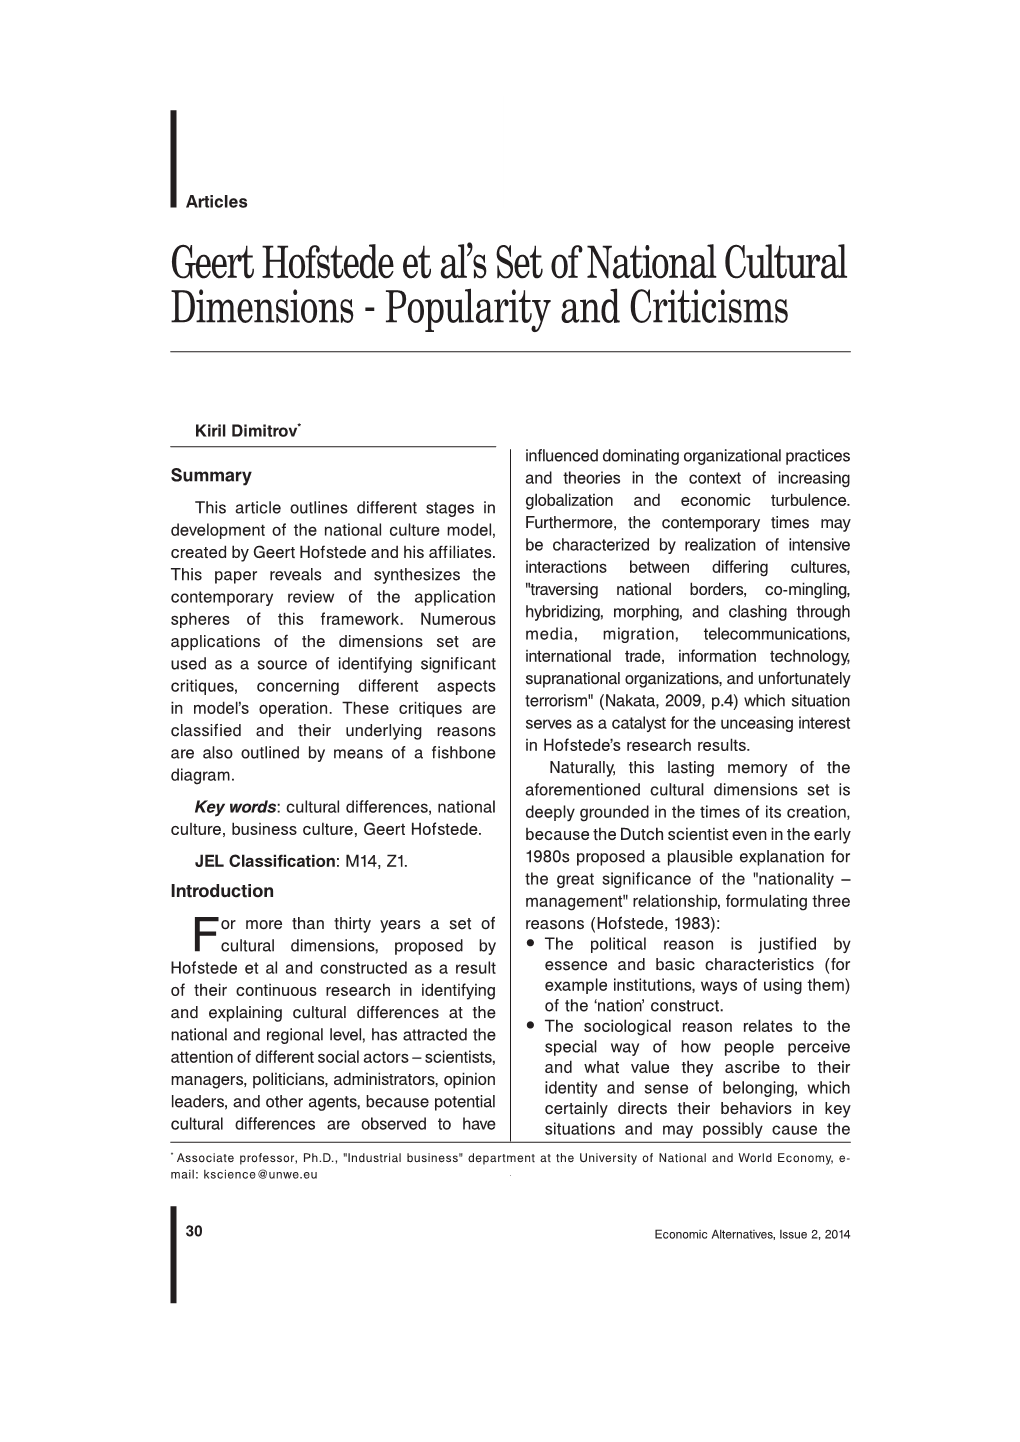 Geert Hofstede Et Al's Set of National Cultural Dimensions